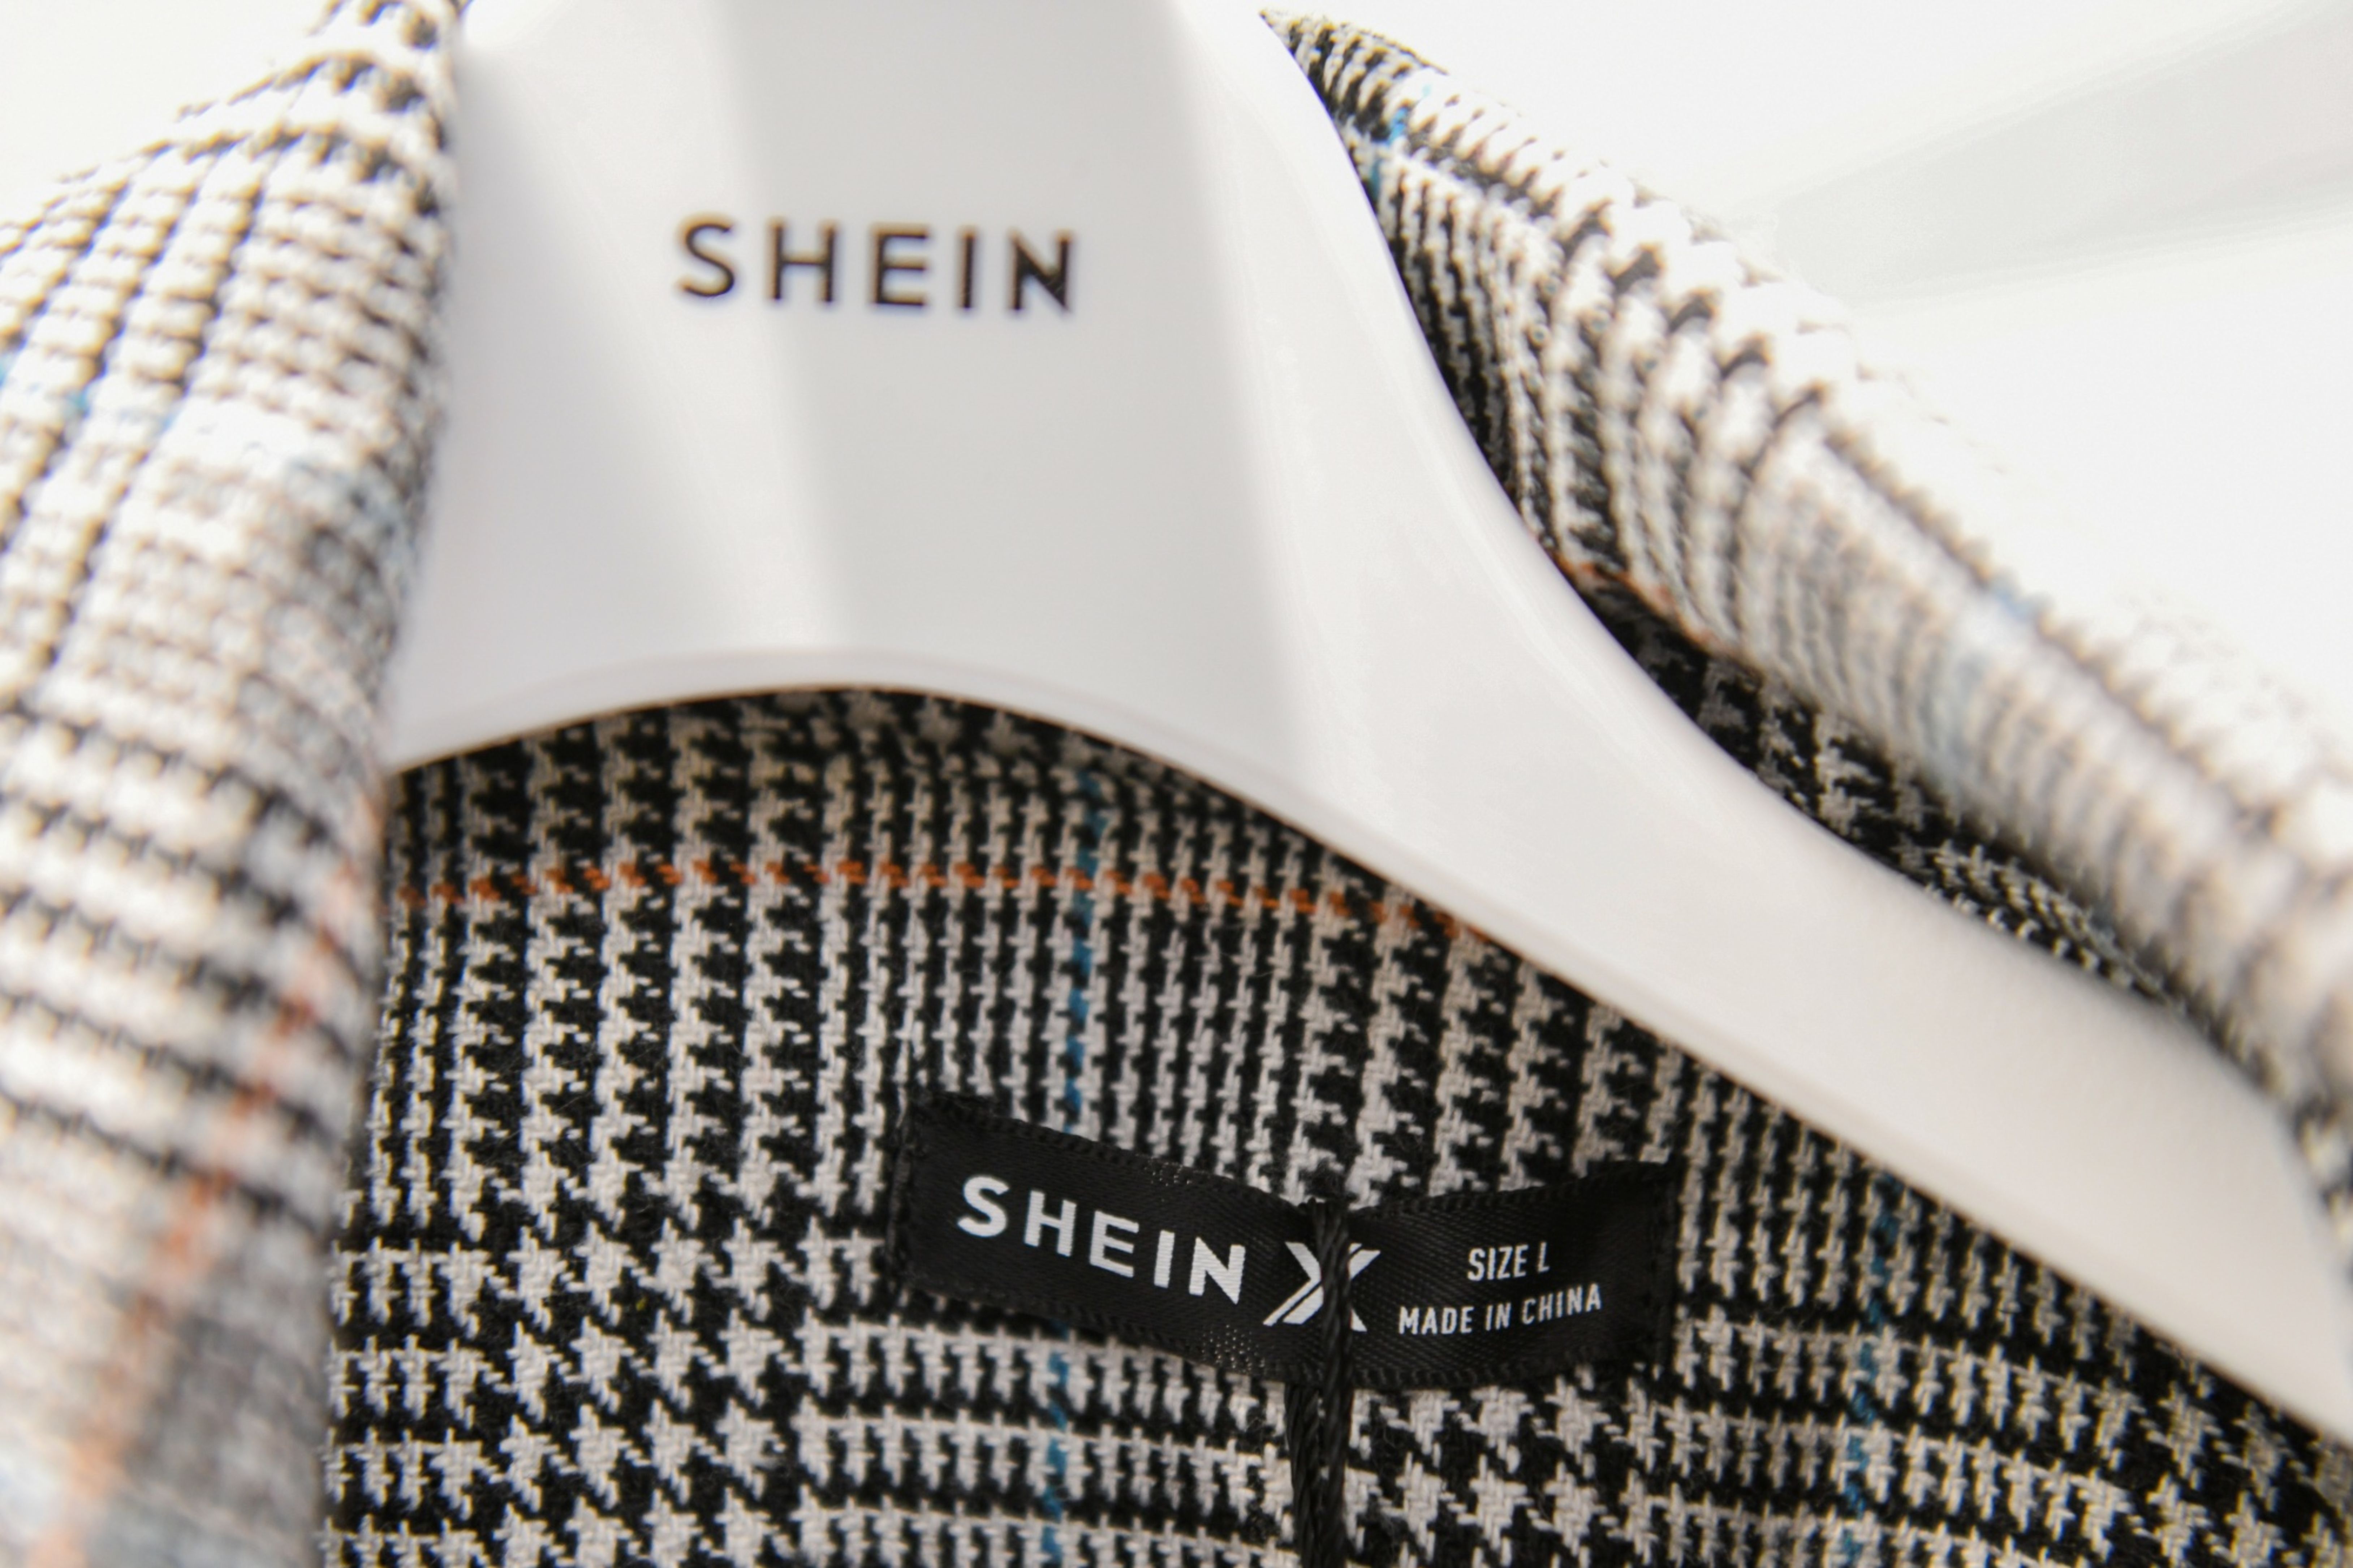 Shein: os problemas legais da gigante chinesa da moda que avança